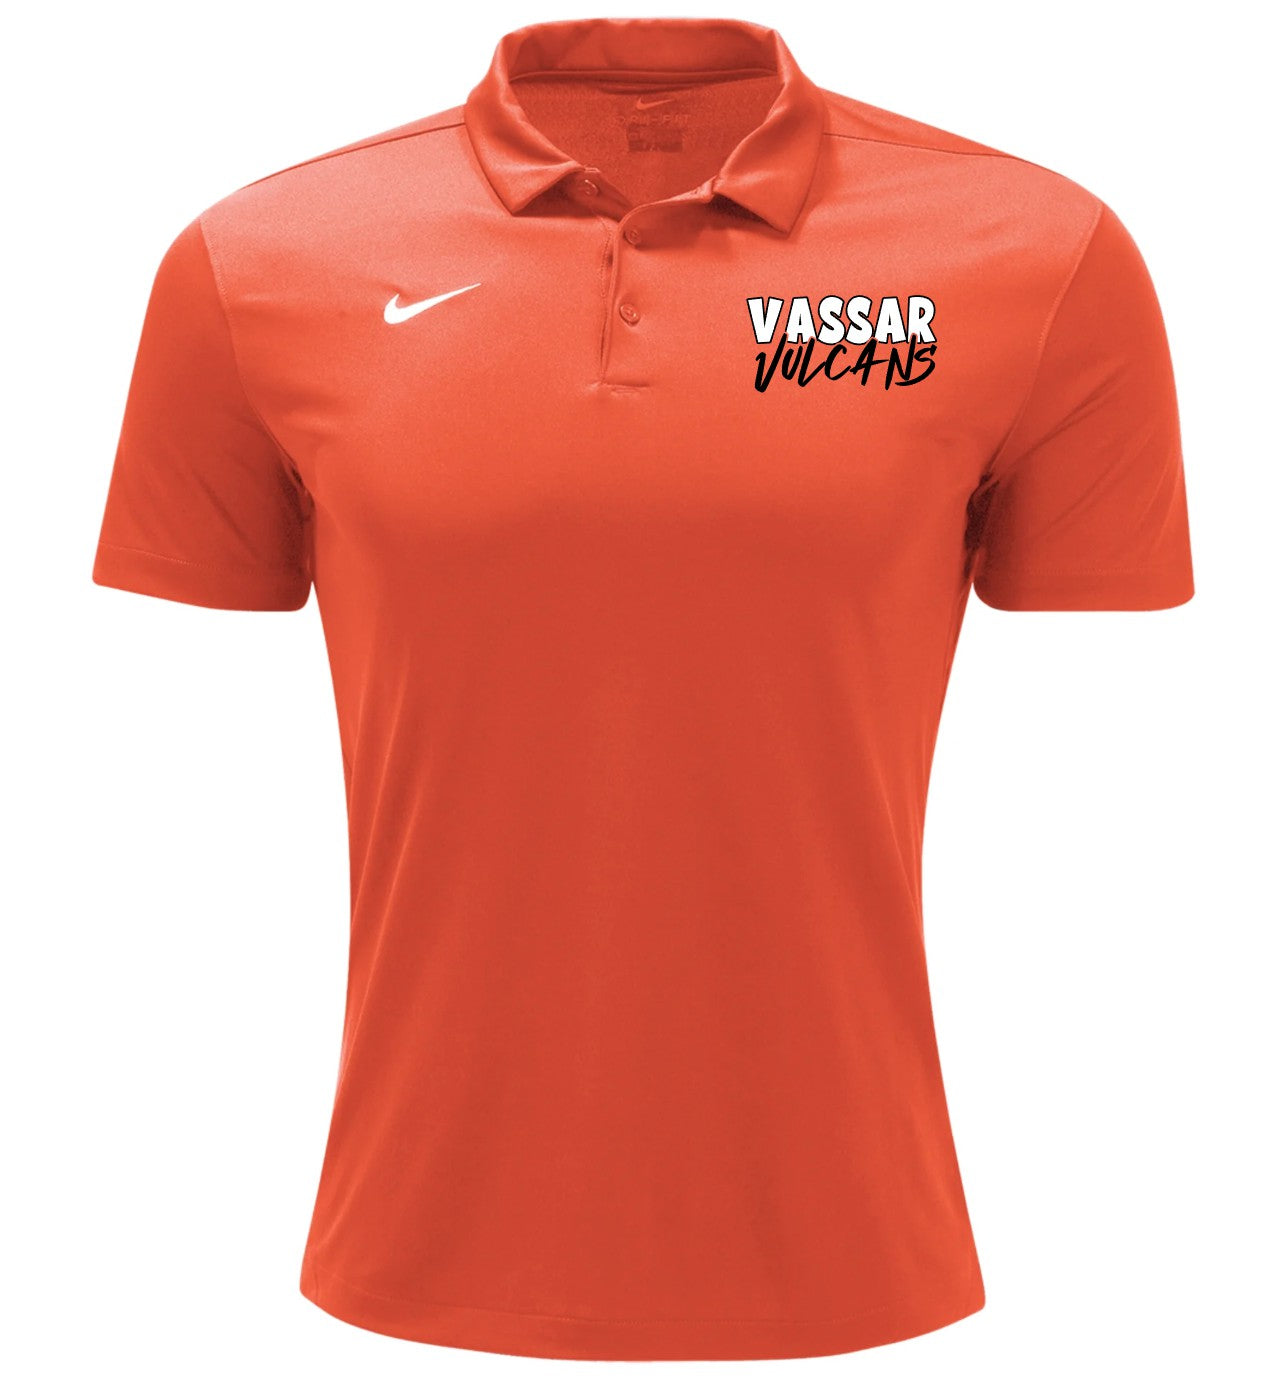 Vassar Men's Nike Polo